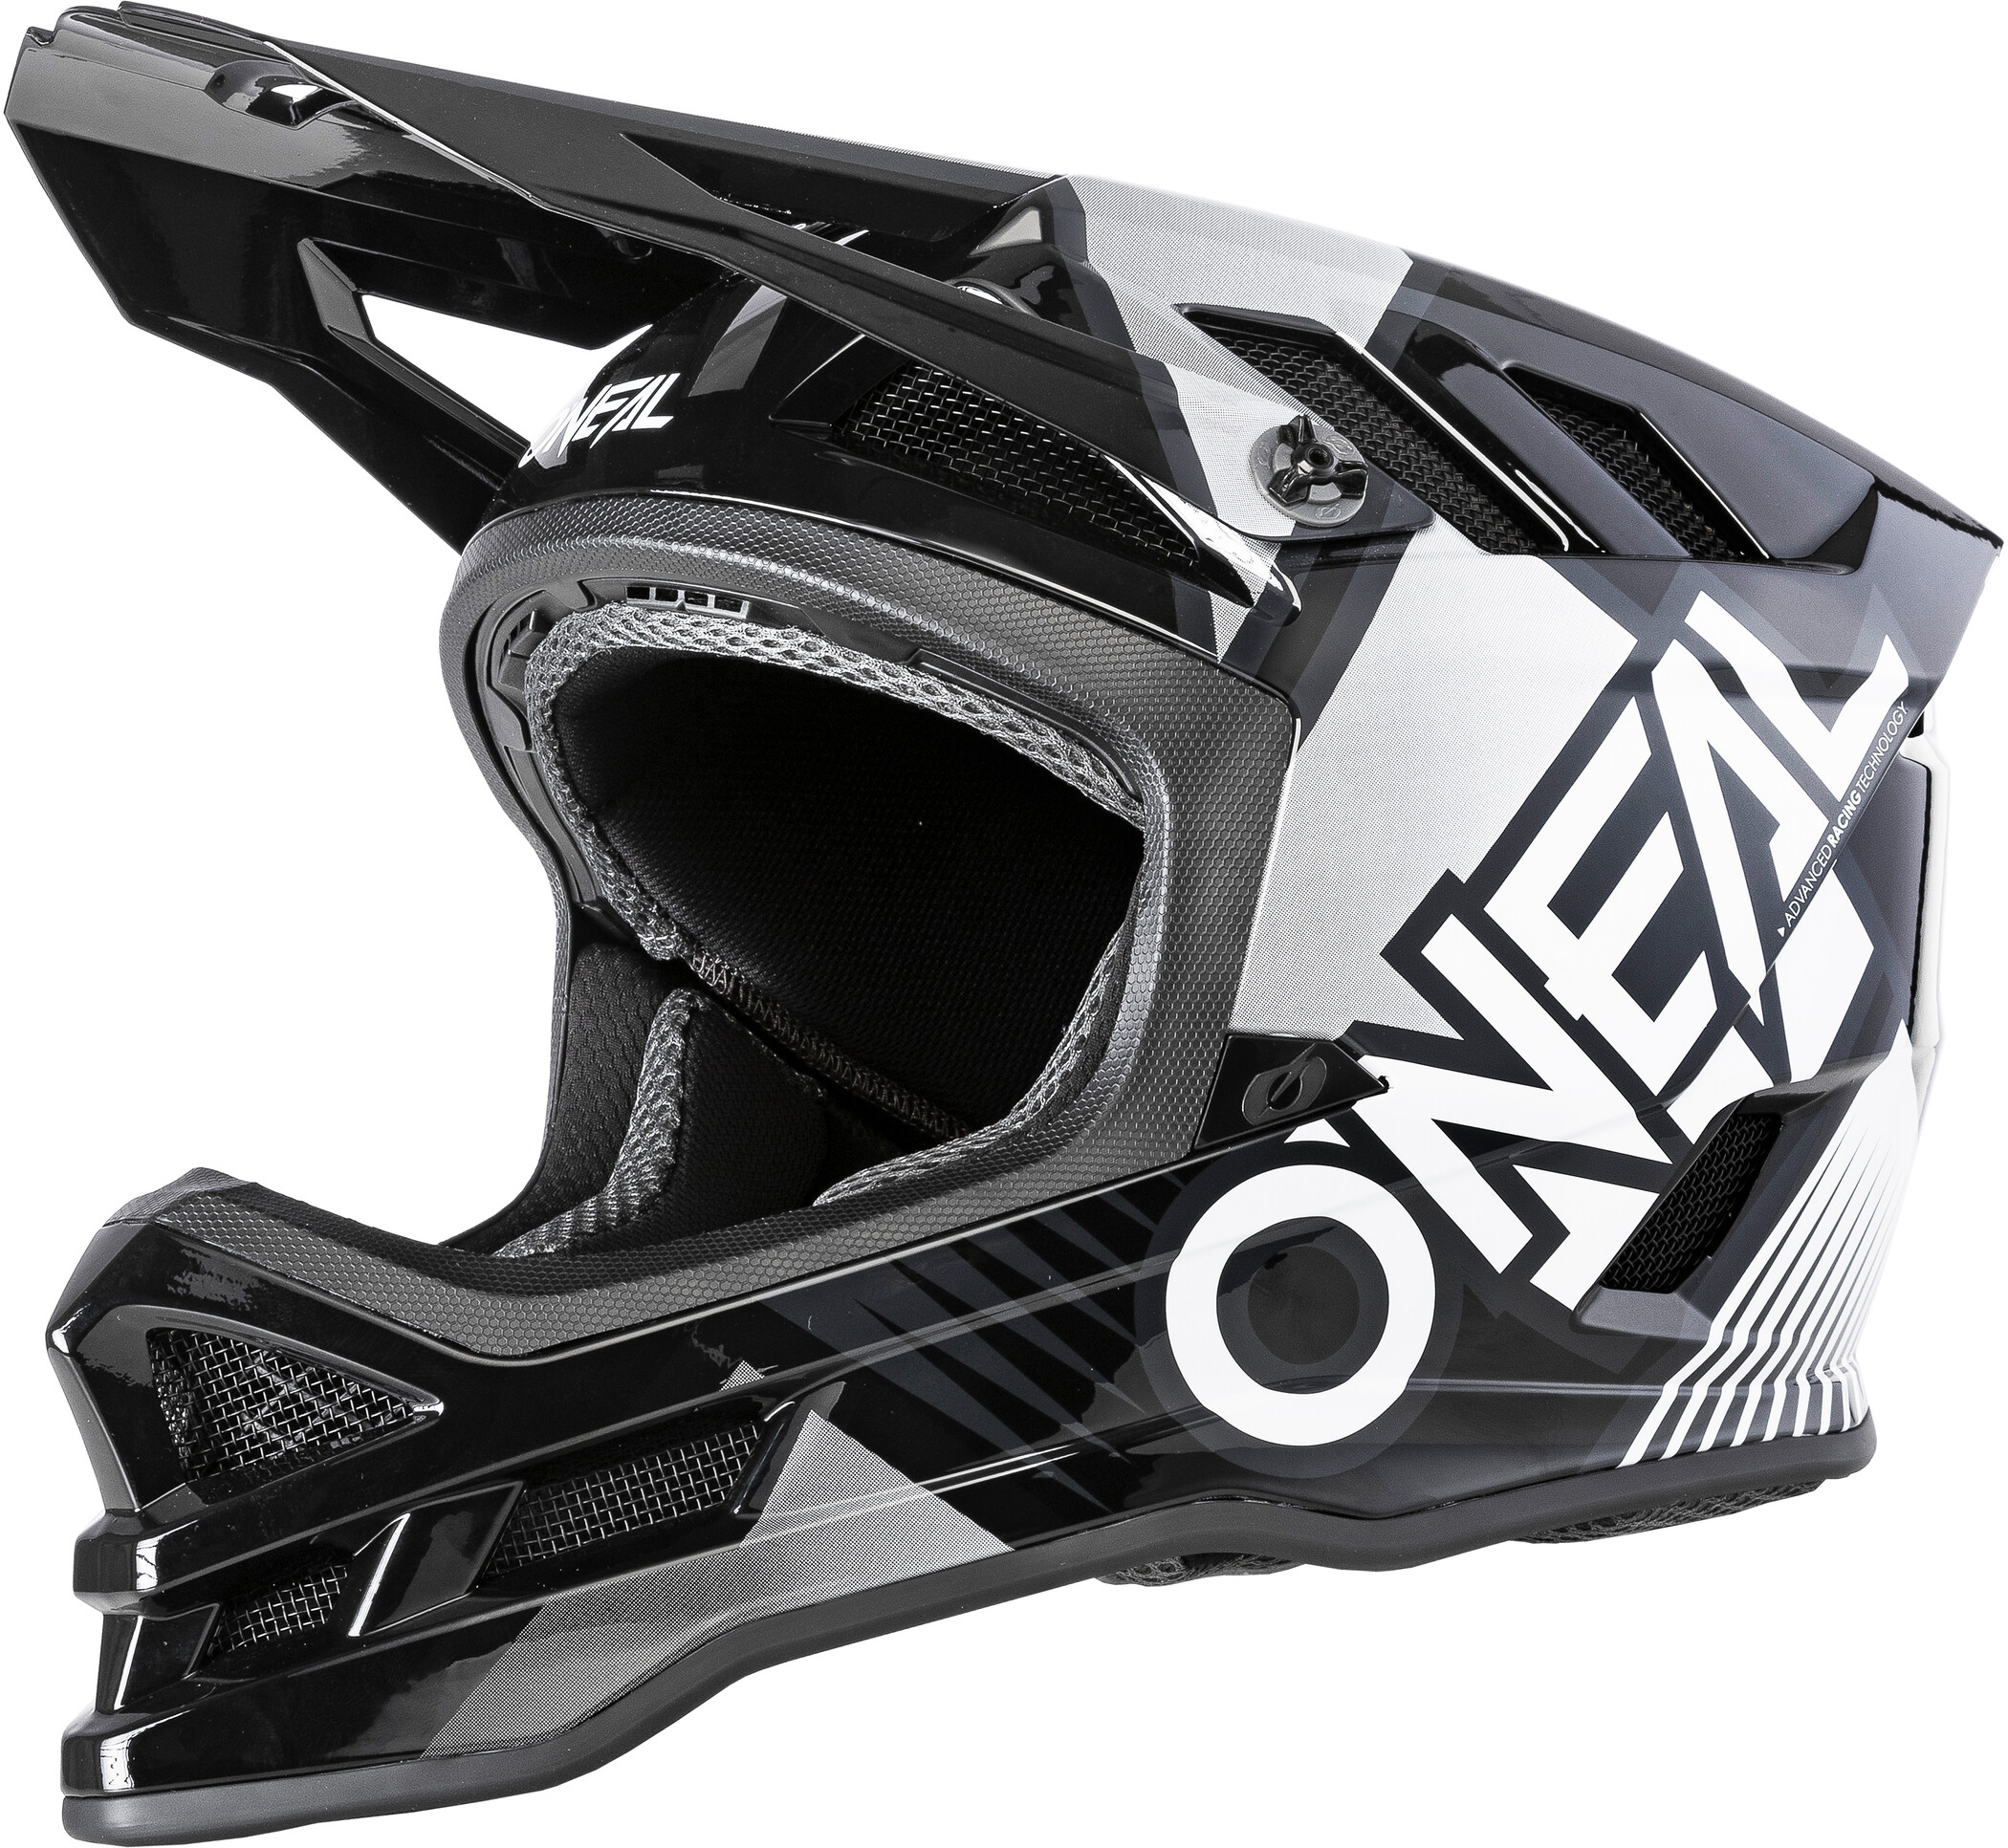 BMX Fahrrad Helm schwarz/weiß/gelb 2020 Oneal O'neal Lid ZF Rift Dirt